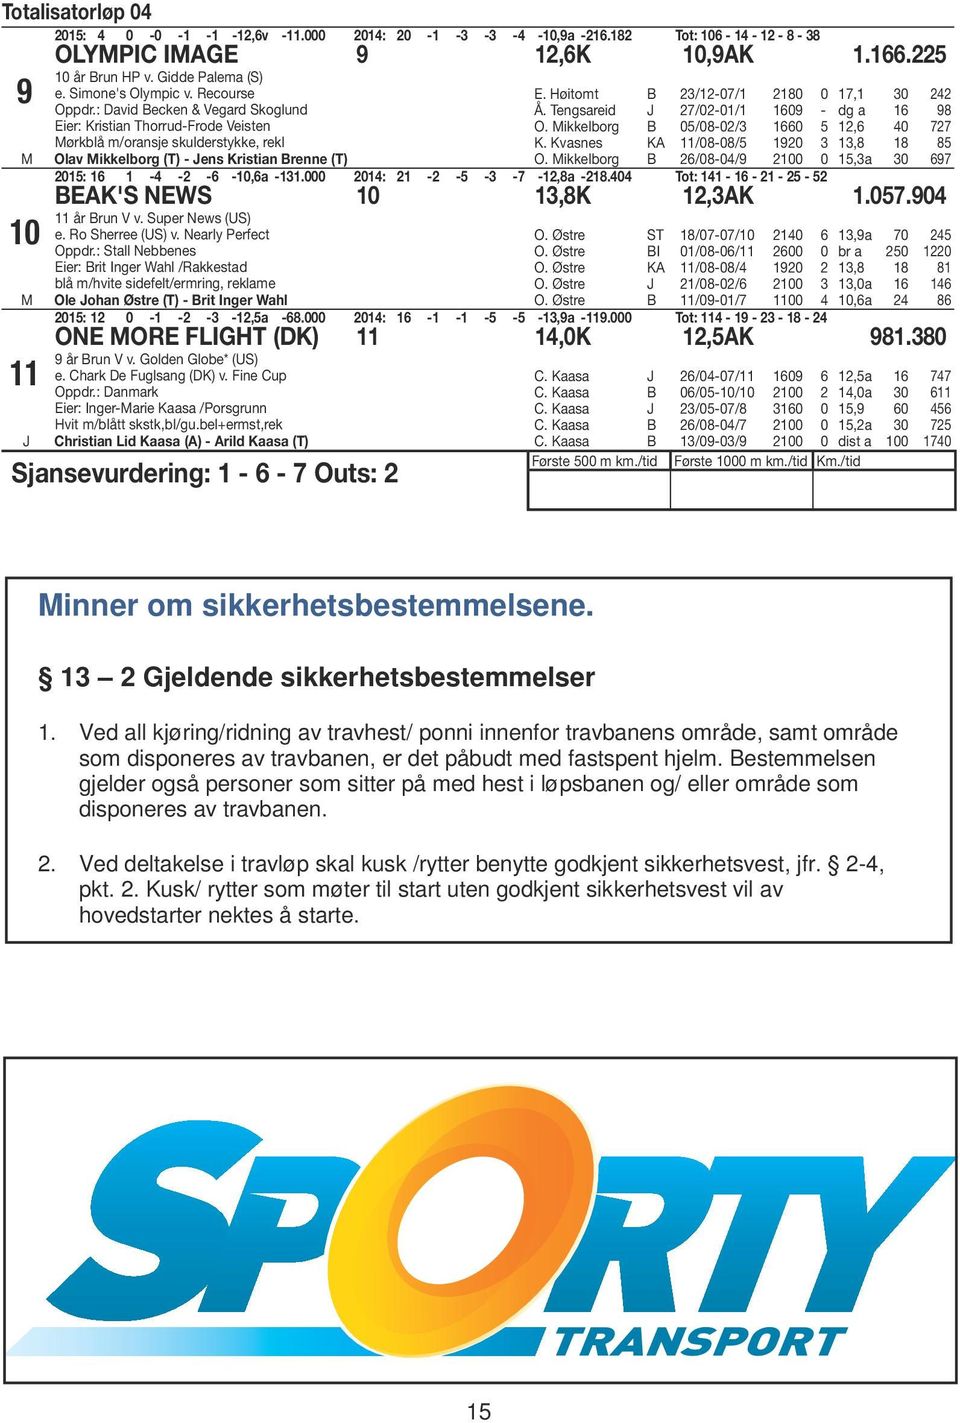 Tengsareid /0-0/ 09 - dg a 98 O. Mikkelborg 05/08-0/ 0 5, 40 K. Kvasnes KA /08-08/5 90,8 8 85 O. Mikkelborg /08-04/9 00 0 5,a 0 9 05: -4 - - -0,a -.000 04: - -5 - - -,8a -8.